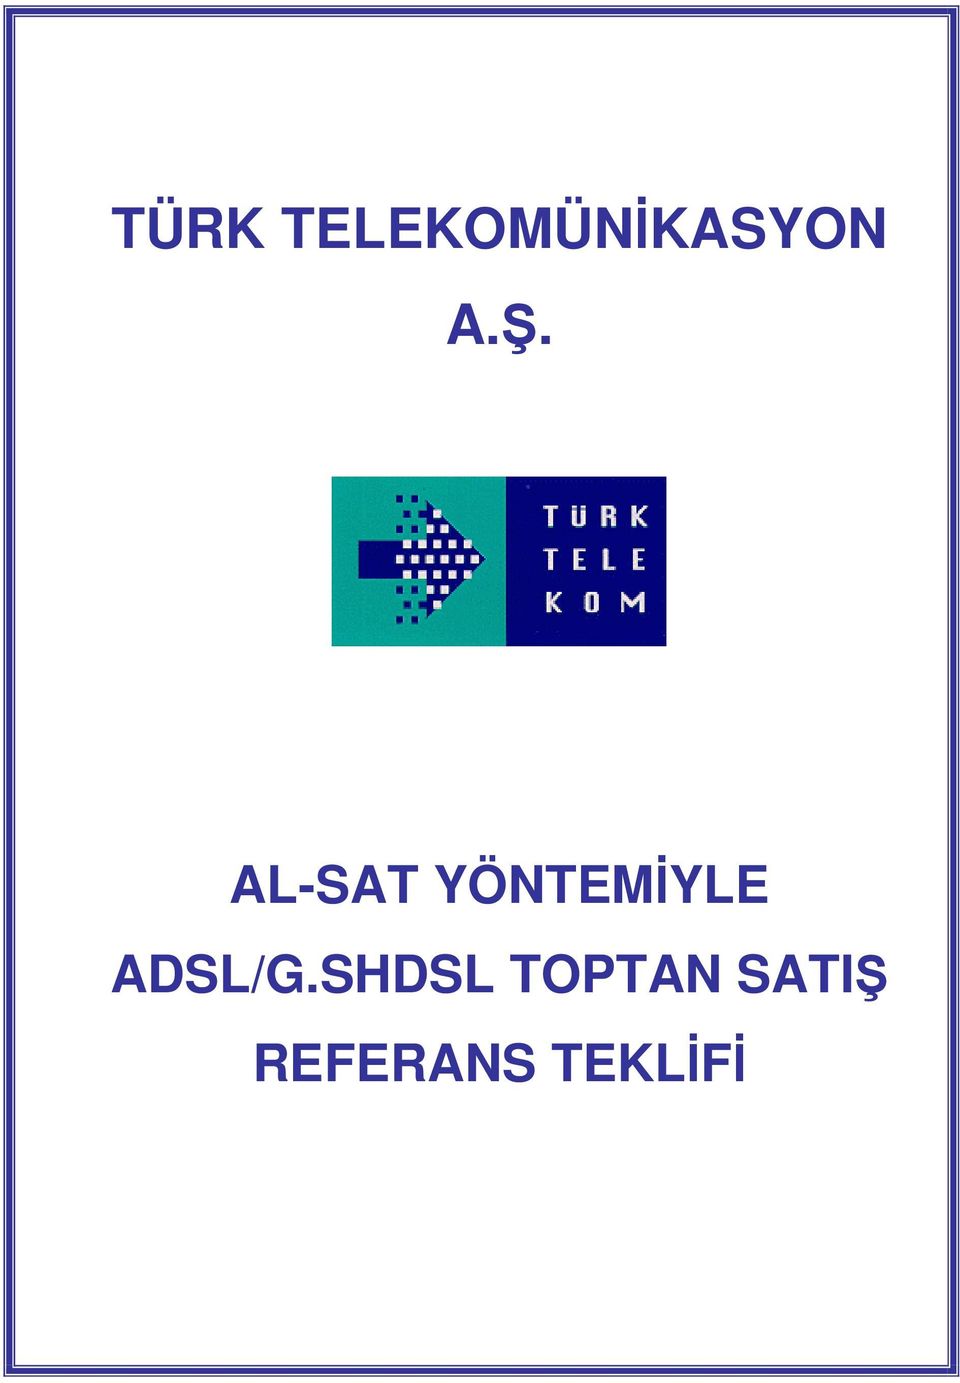 YÖNTEMİYLE ADSL/G.